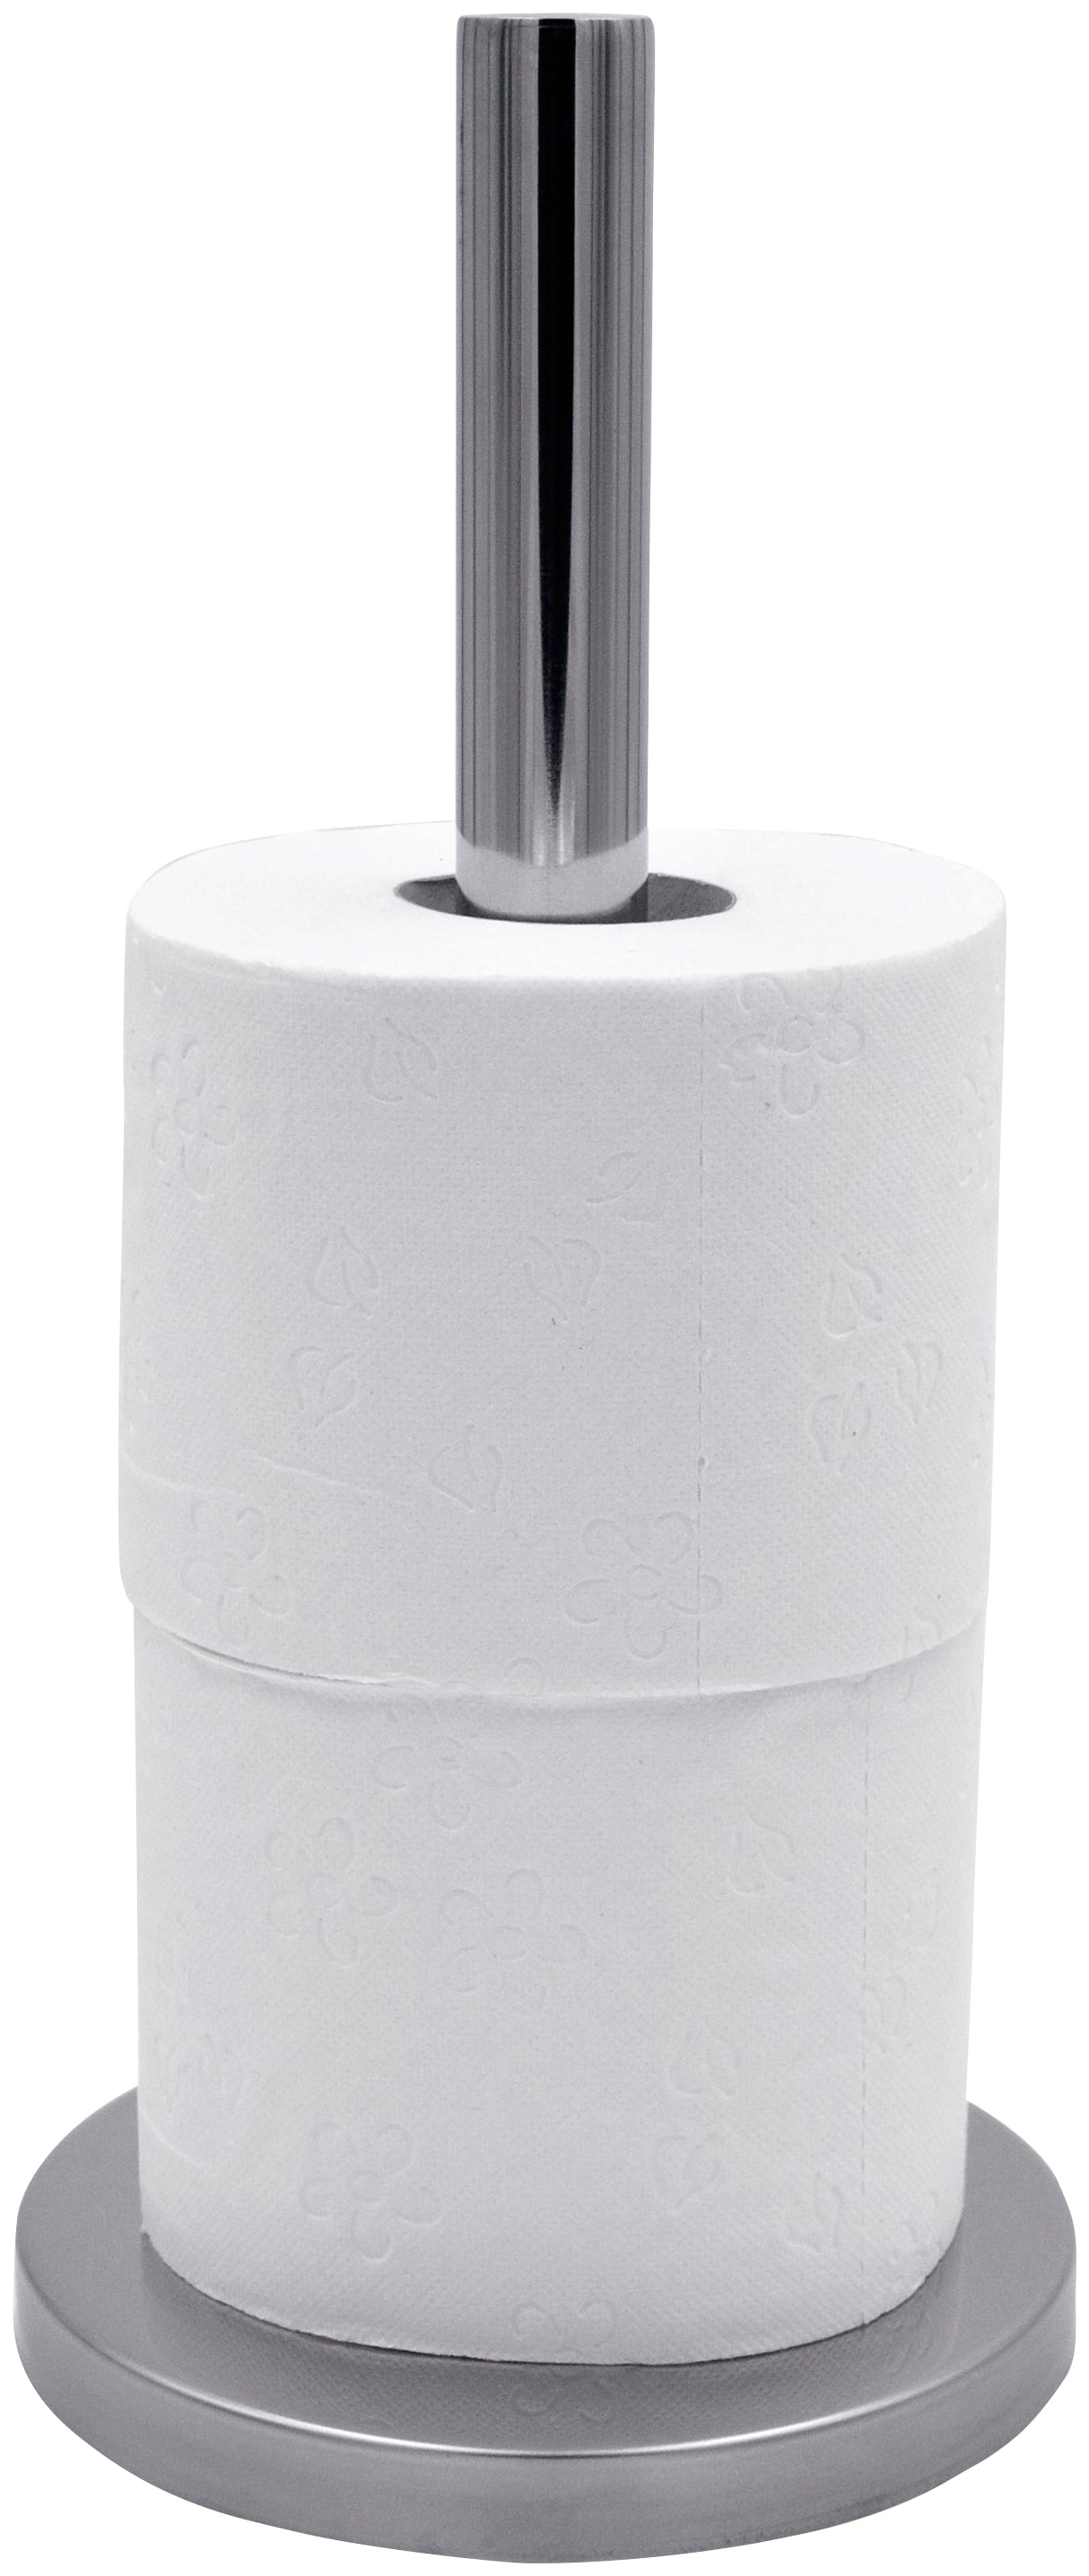 Ridder Toilettenpapierhalter »Basic«, für bis zu drei Rollen